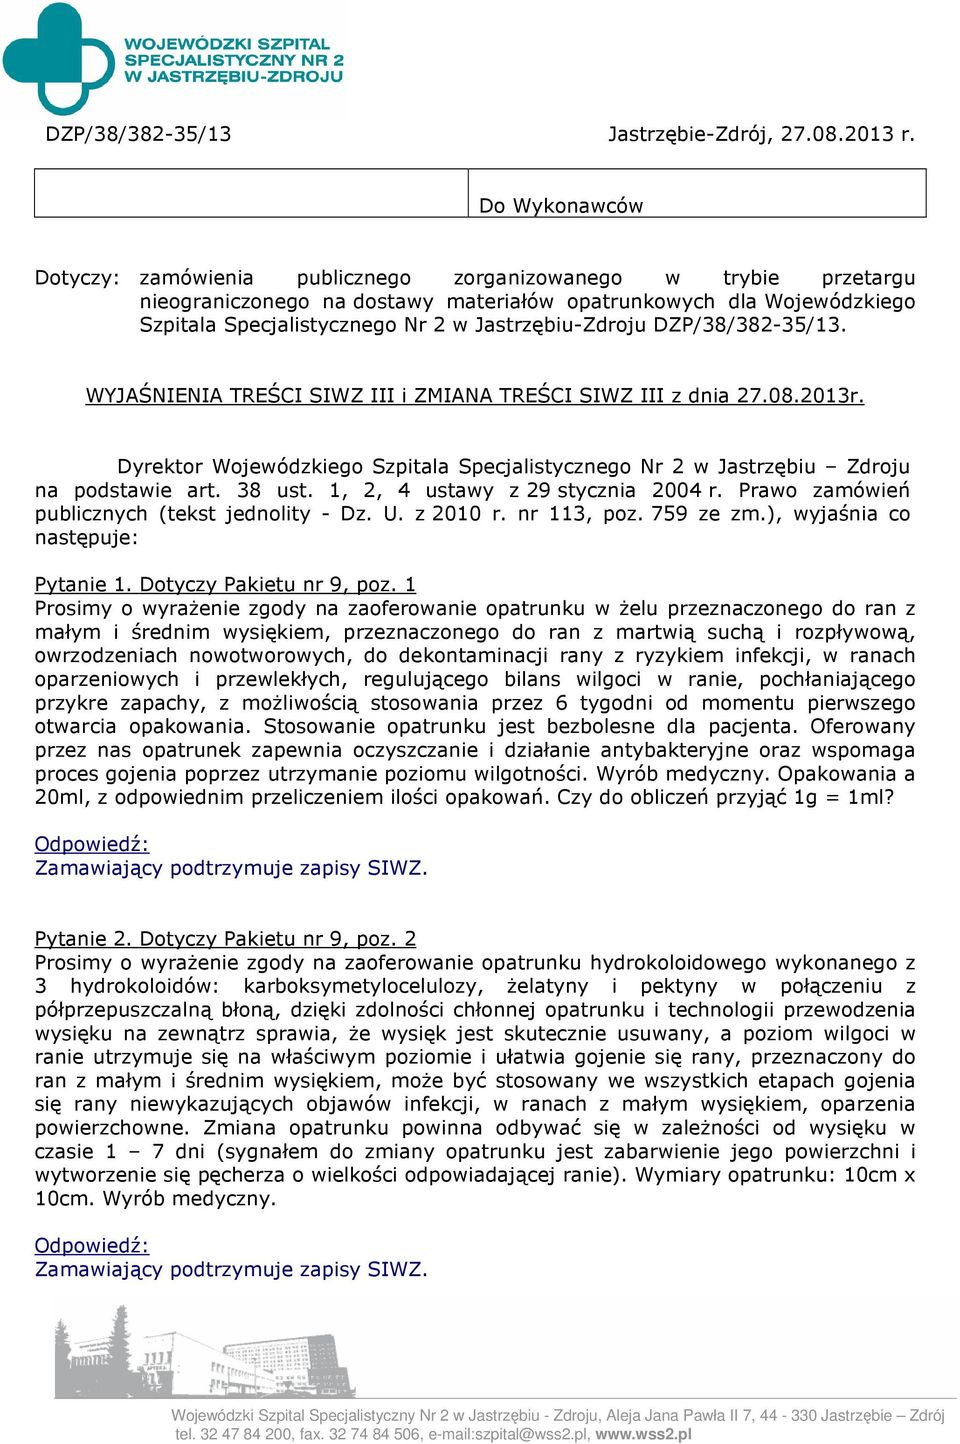 Jastrzębiu-Zdroju DZP/38/382-35/13. WYJAŚNIENIA TREŚCI SIWZ III i ZMIANA TREŚCI SIWZ III z dnia 27.08.2013r.